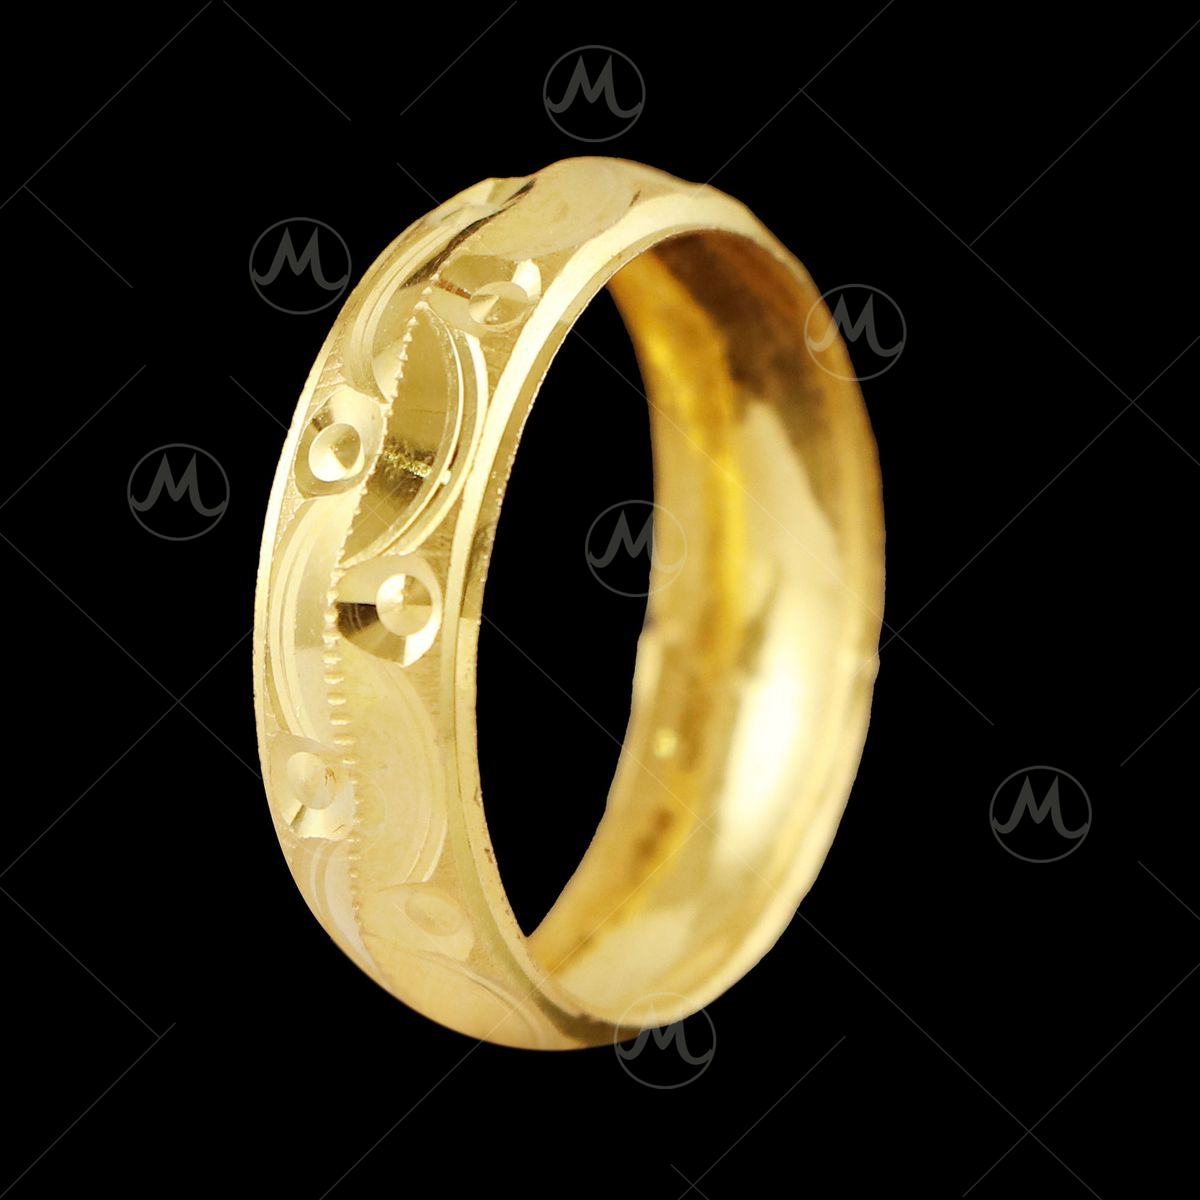 An Inner Artisan Men's Gold Band Ring